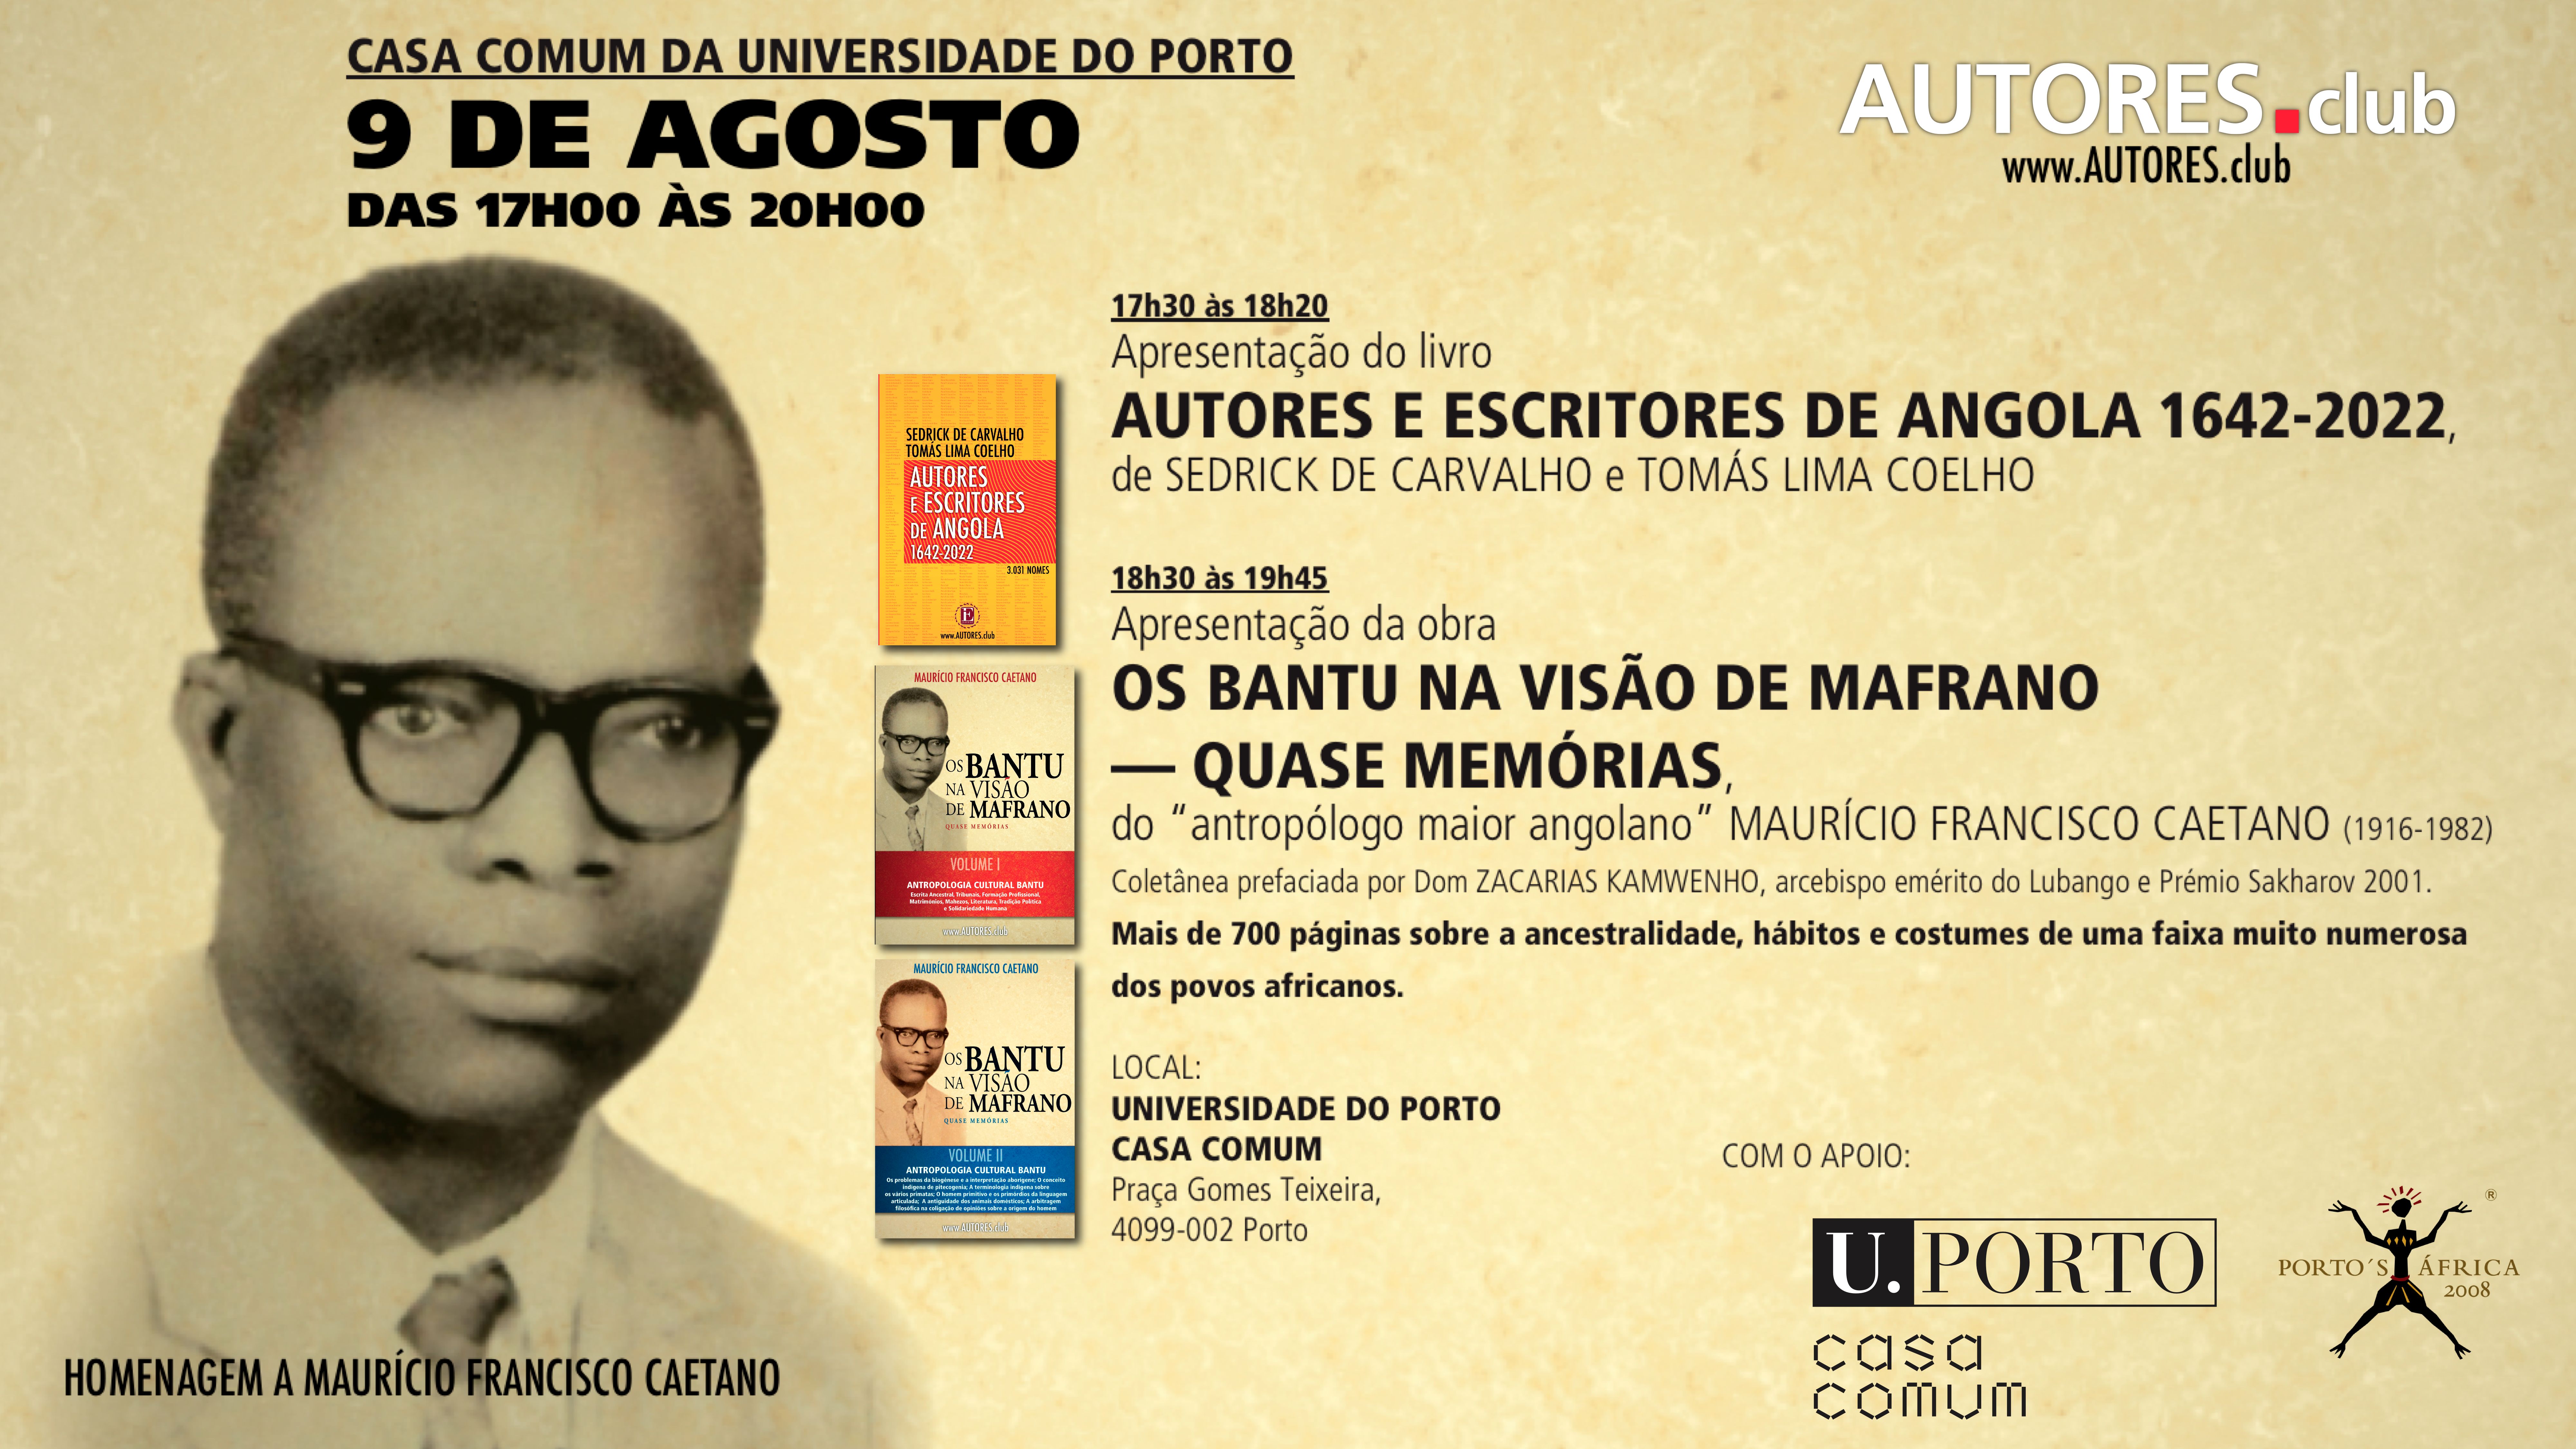 Obra de Mafrano apresentada na Casa Comum da Universidade do Porto